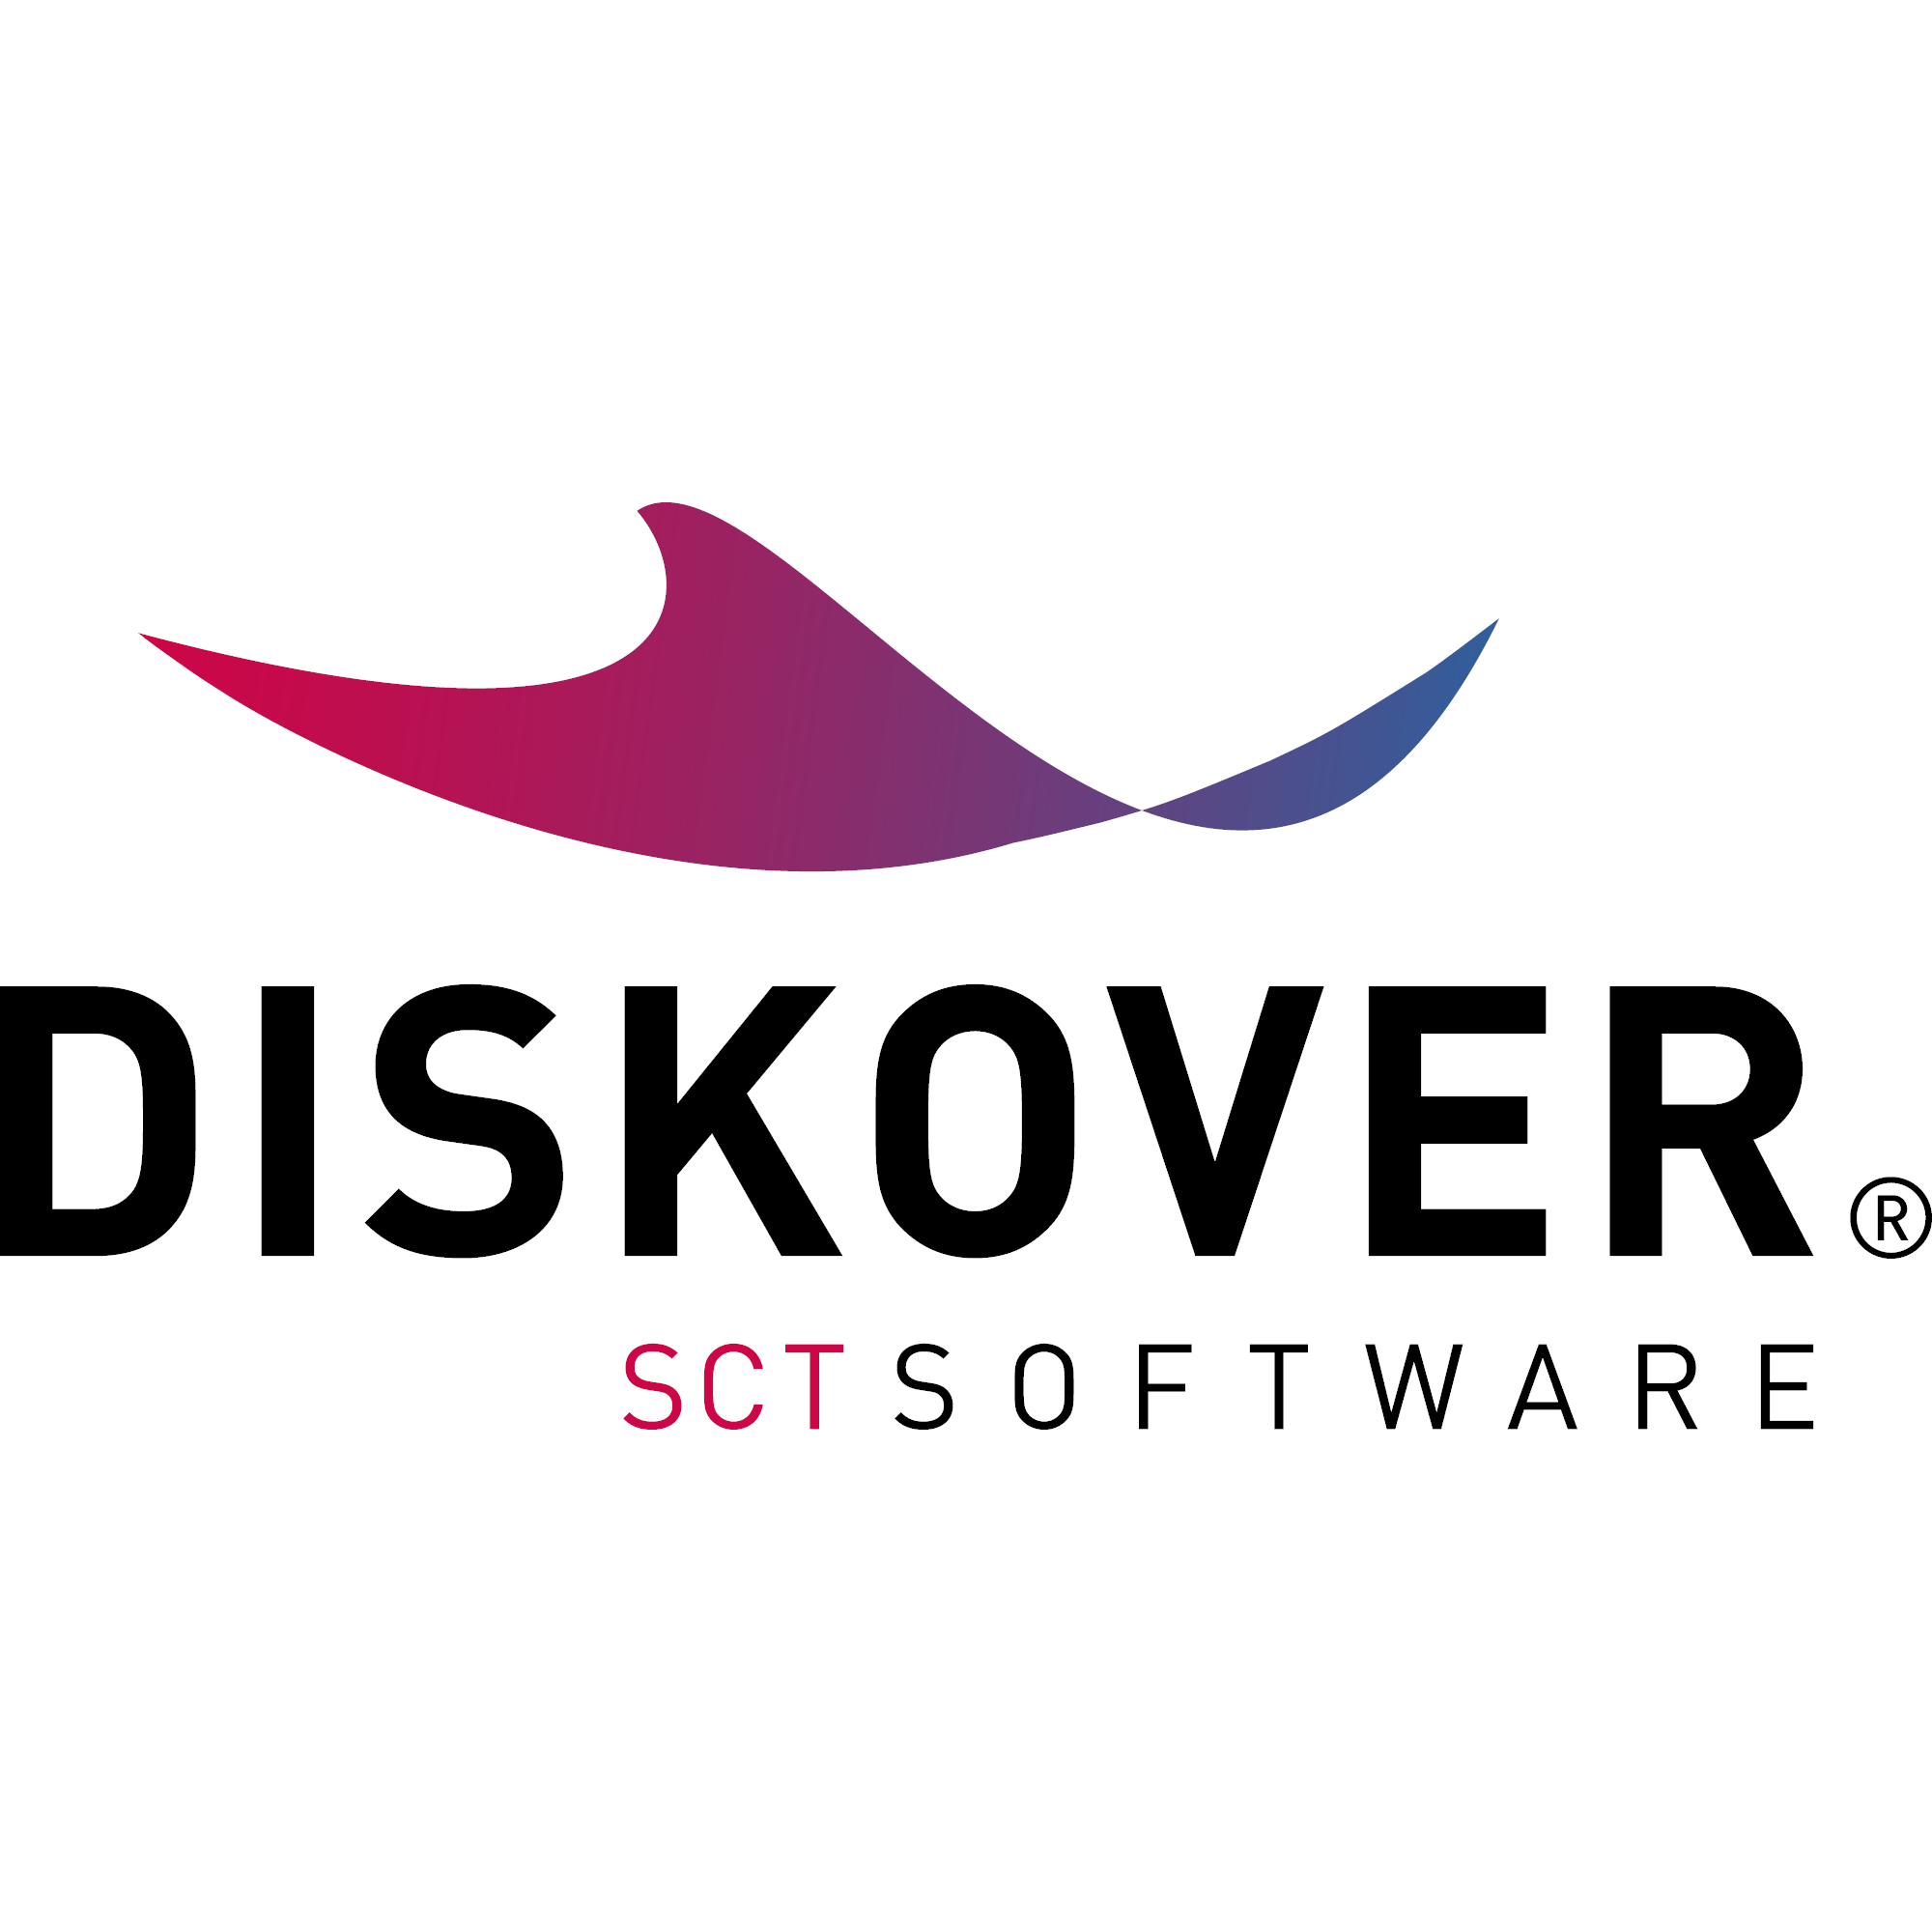 DISKOVER Logo - SCT GmbH